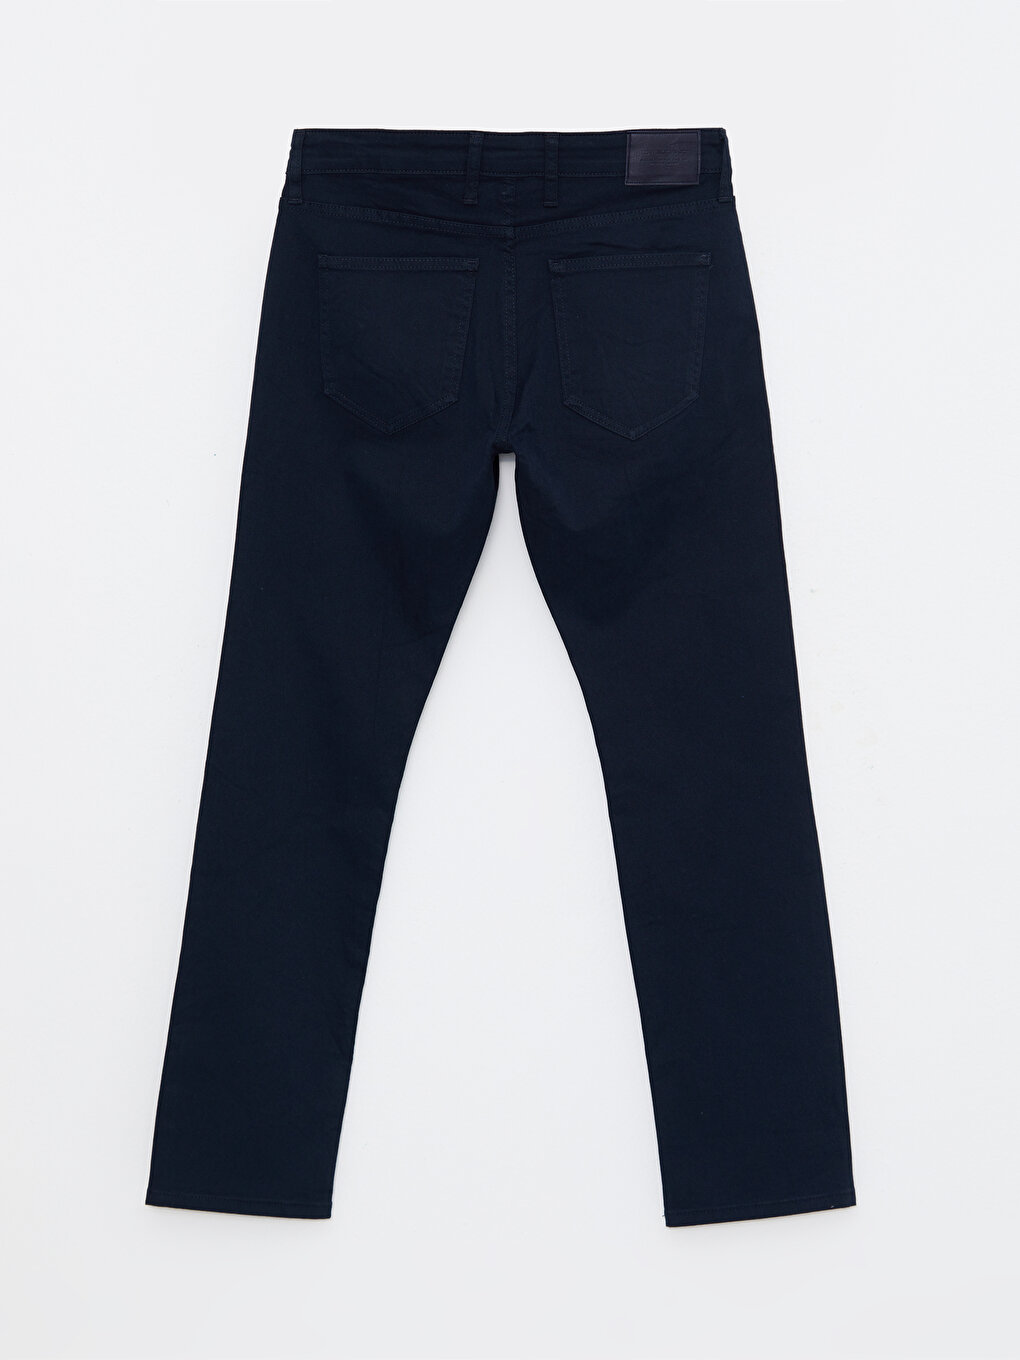 Standard Pattern Gabardine Men's Chino Trousers -W27708Z8-KN7 